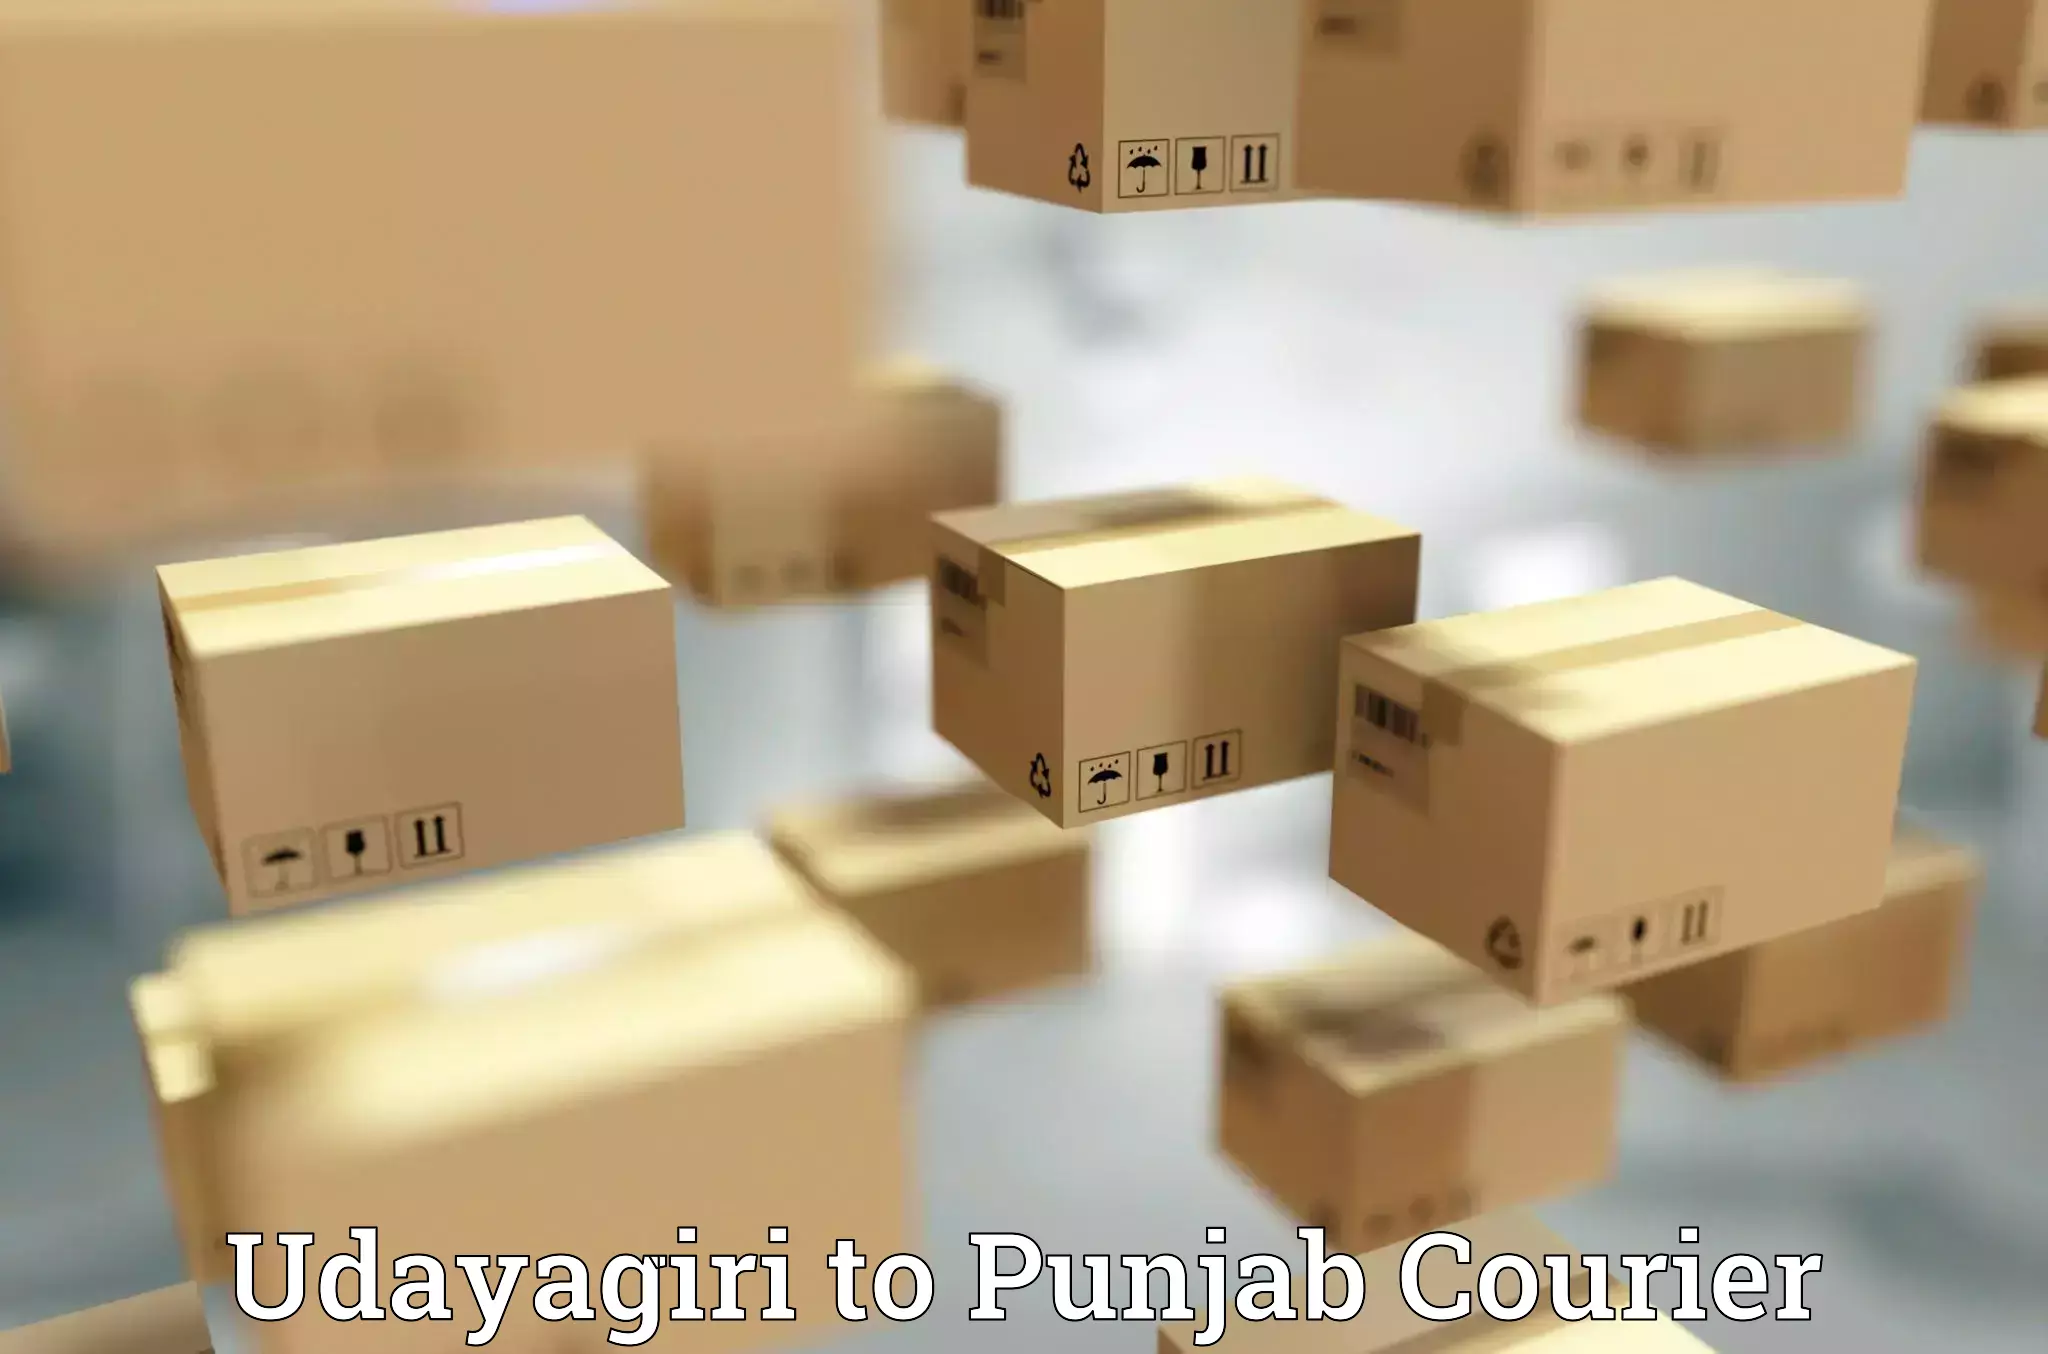 Baggage delivery scheduling Udayagiri to Punjab